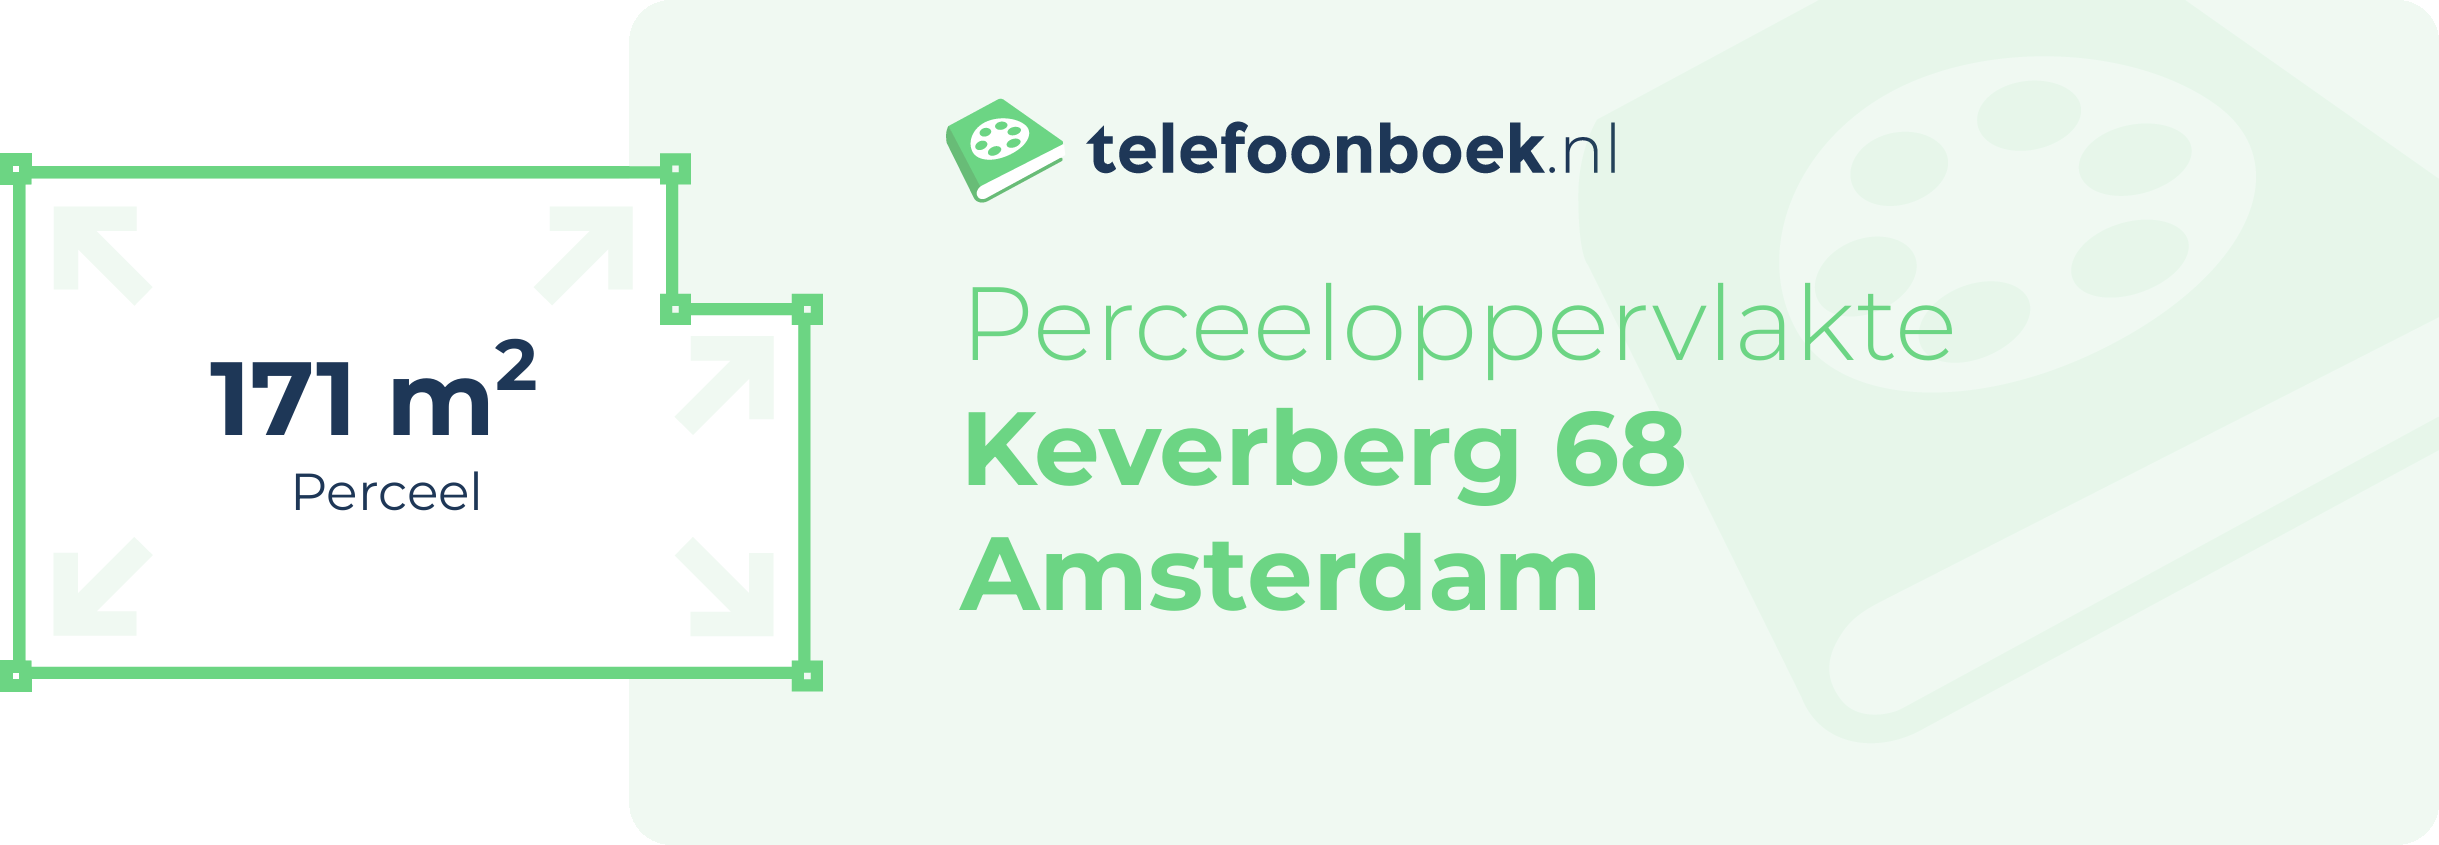 Perceeloppervlakte Keverberg 68 Amsterdam